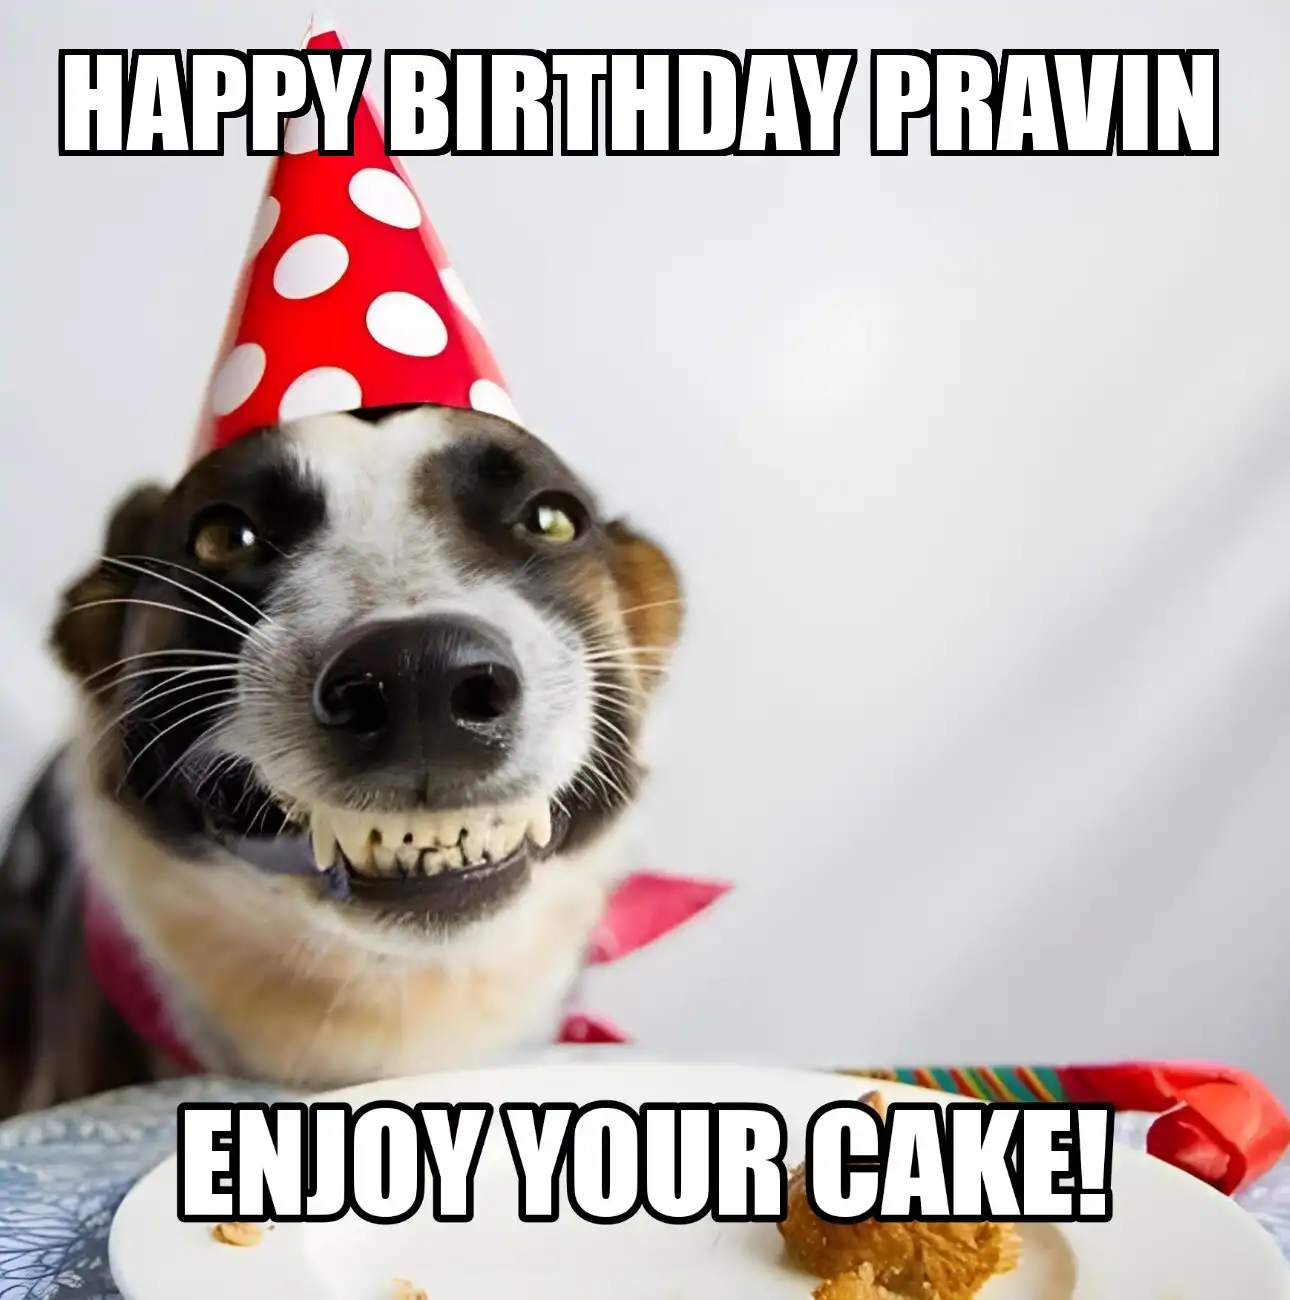 Happy Birthday Pravin Enjoy Your Cake Dog Meme